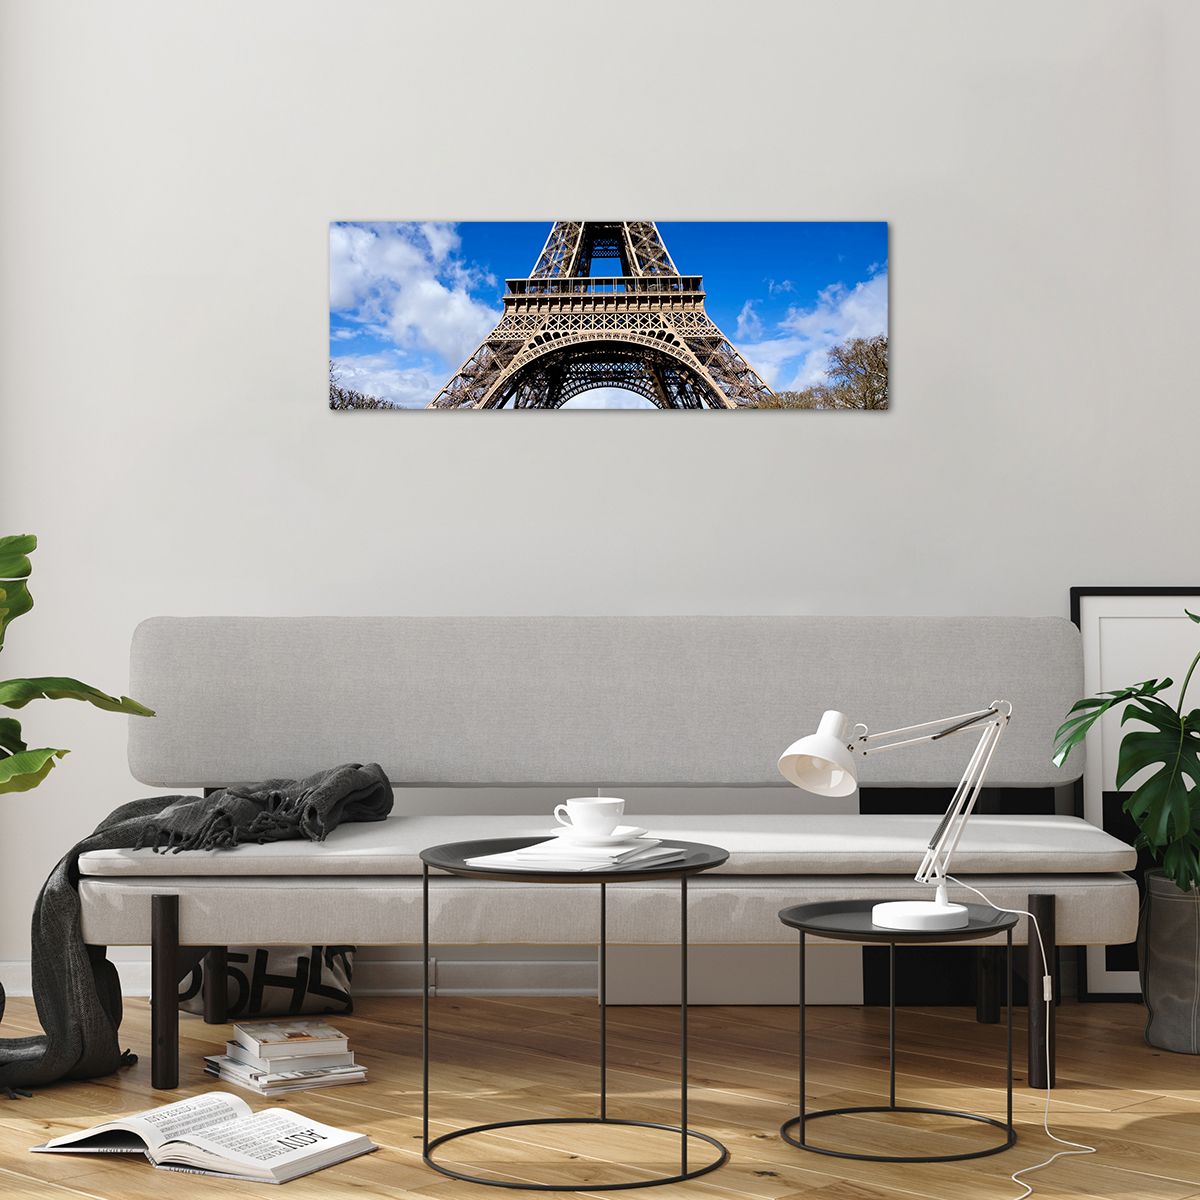 Bilder auf glas Eiffelturm, Bilder auf glas Paris, Bilder auf glas Die Architektur, Bilder auf glas Frankreich, Bilder auf glas Stadt